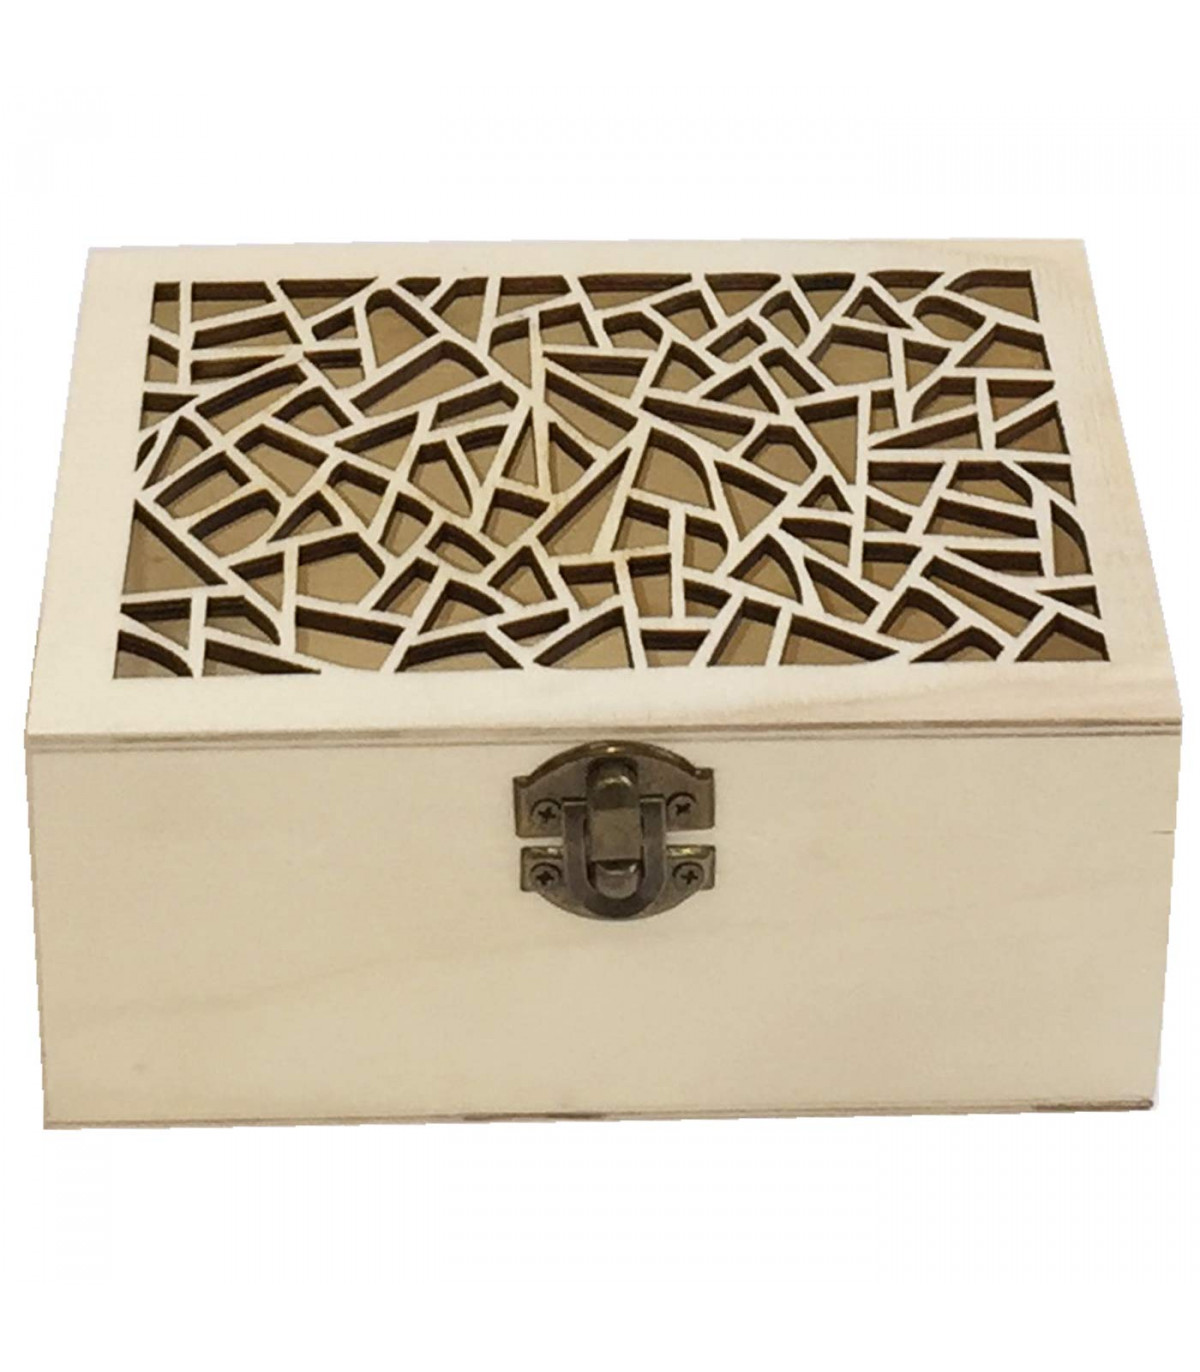 Caja de madera rectangular con frontal redondeado y cierre metálico 12.5 x  8.5 x 5.5 cm. Caja, cofre para decorar con tapa, alma